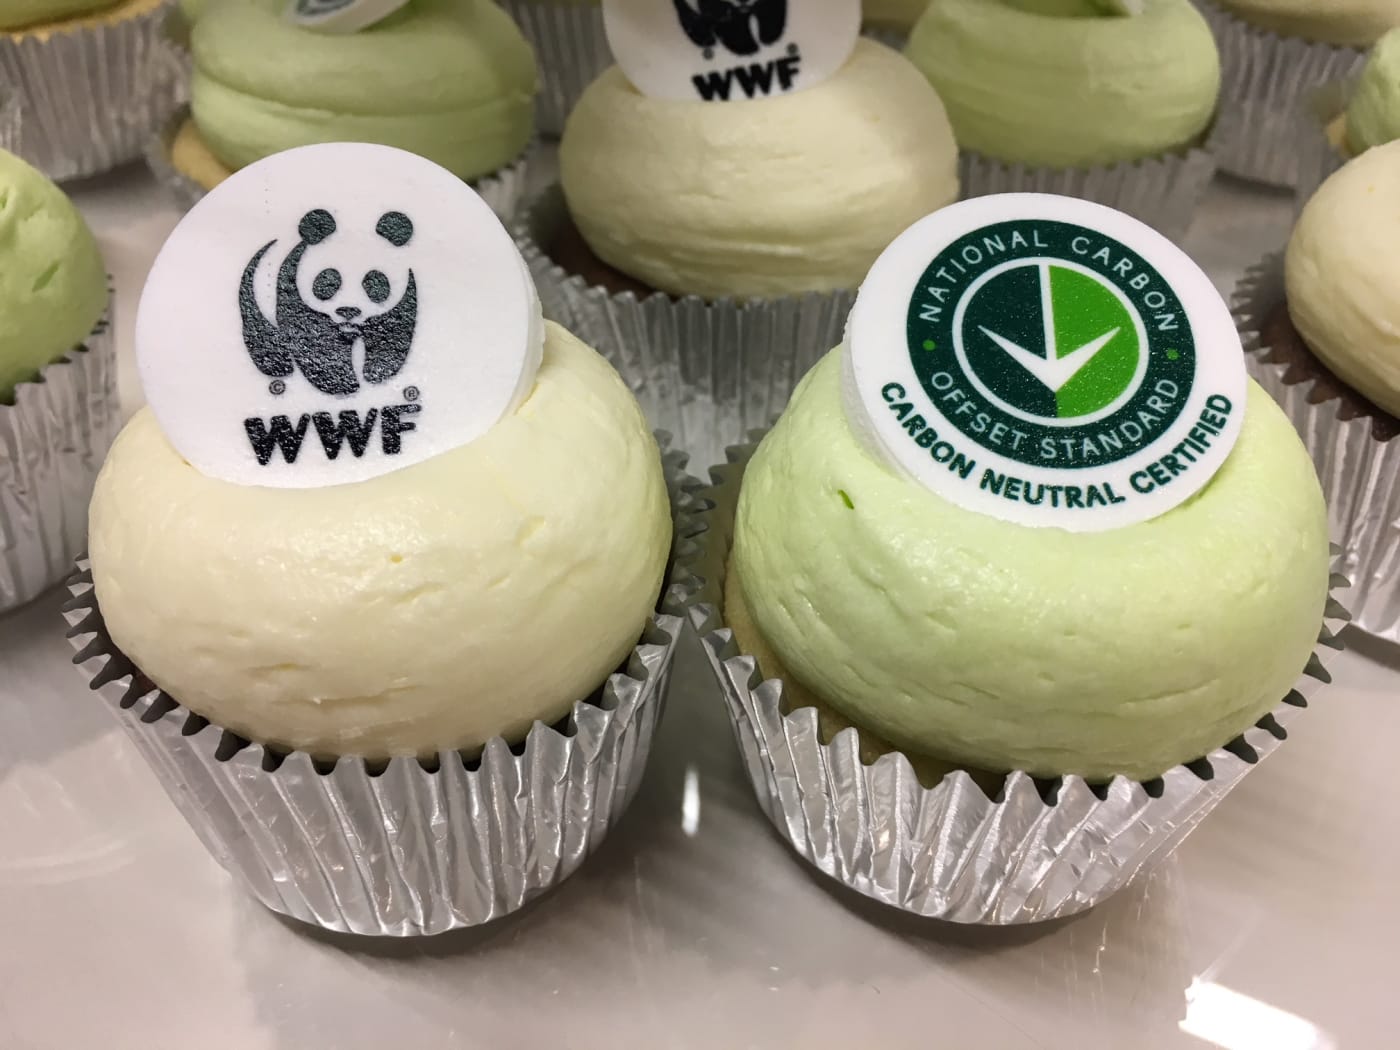 Carbon neutral cupcake